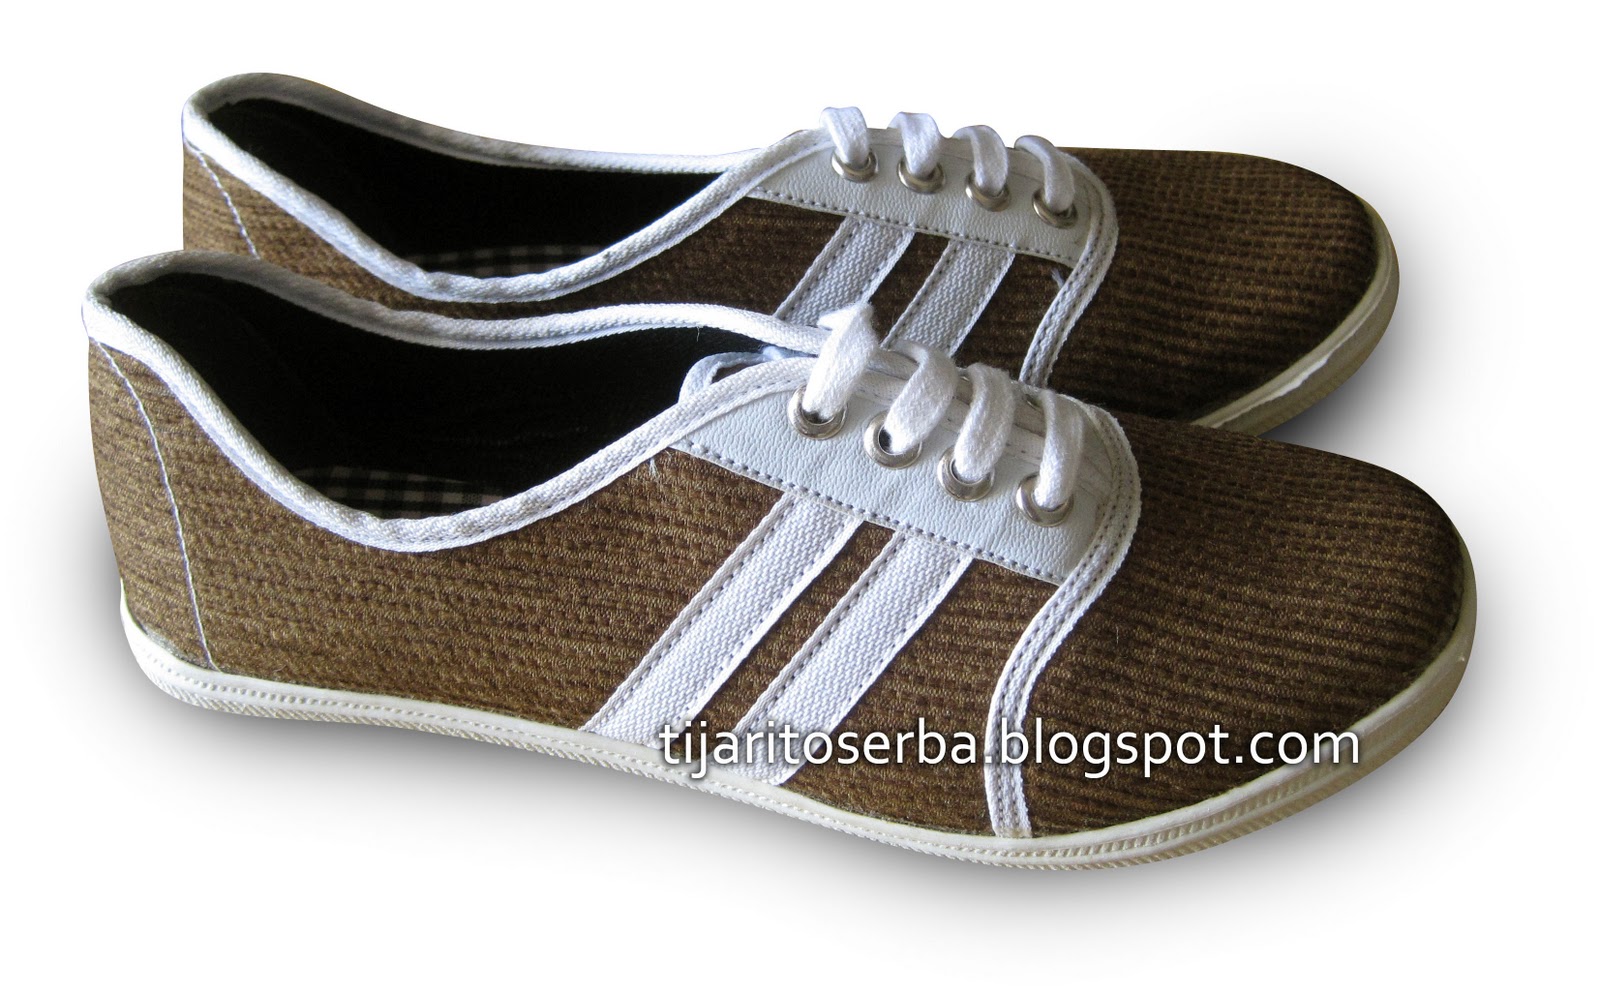 tas tali gambar sepatu rajut Tijari  Sepatu Toserba Online: Cewe